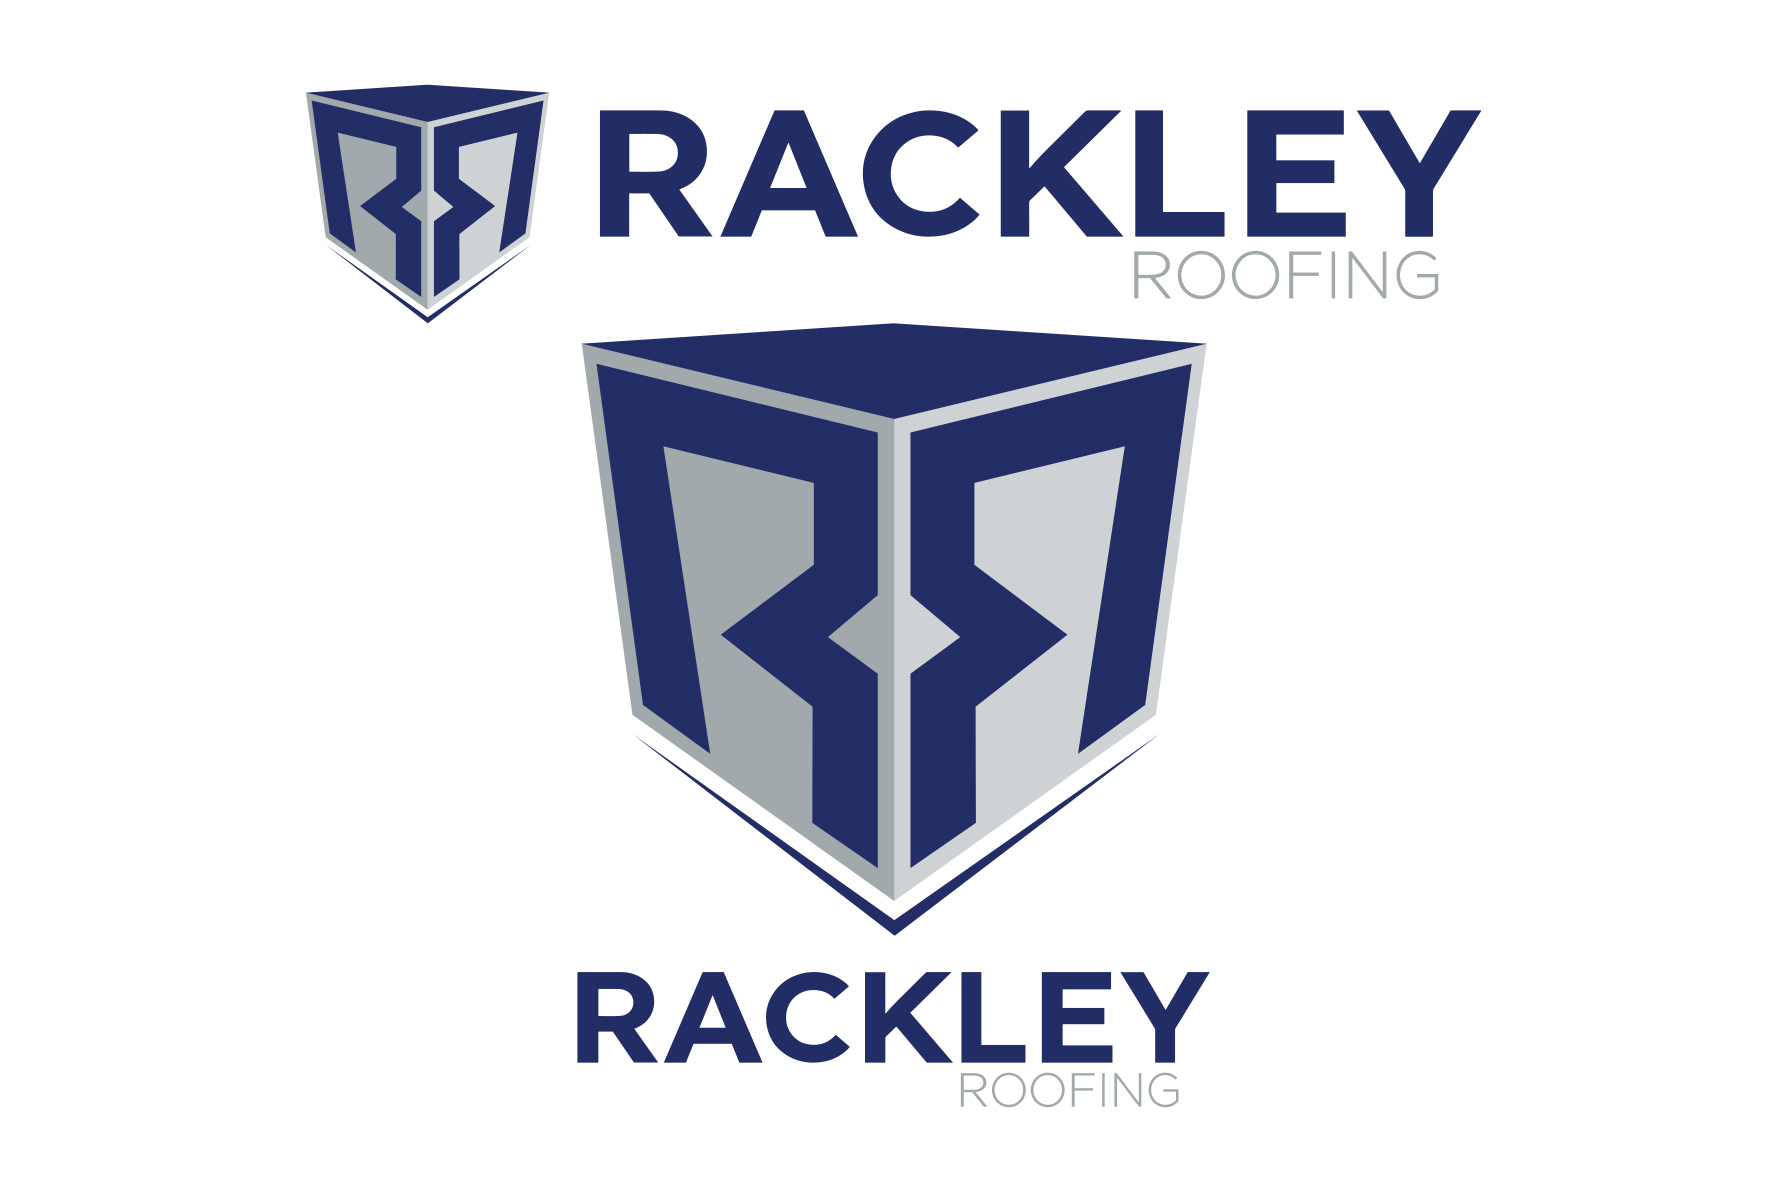 Rackley Roofing Logos.jpg